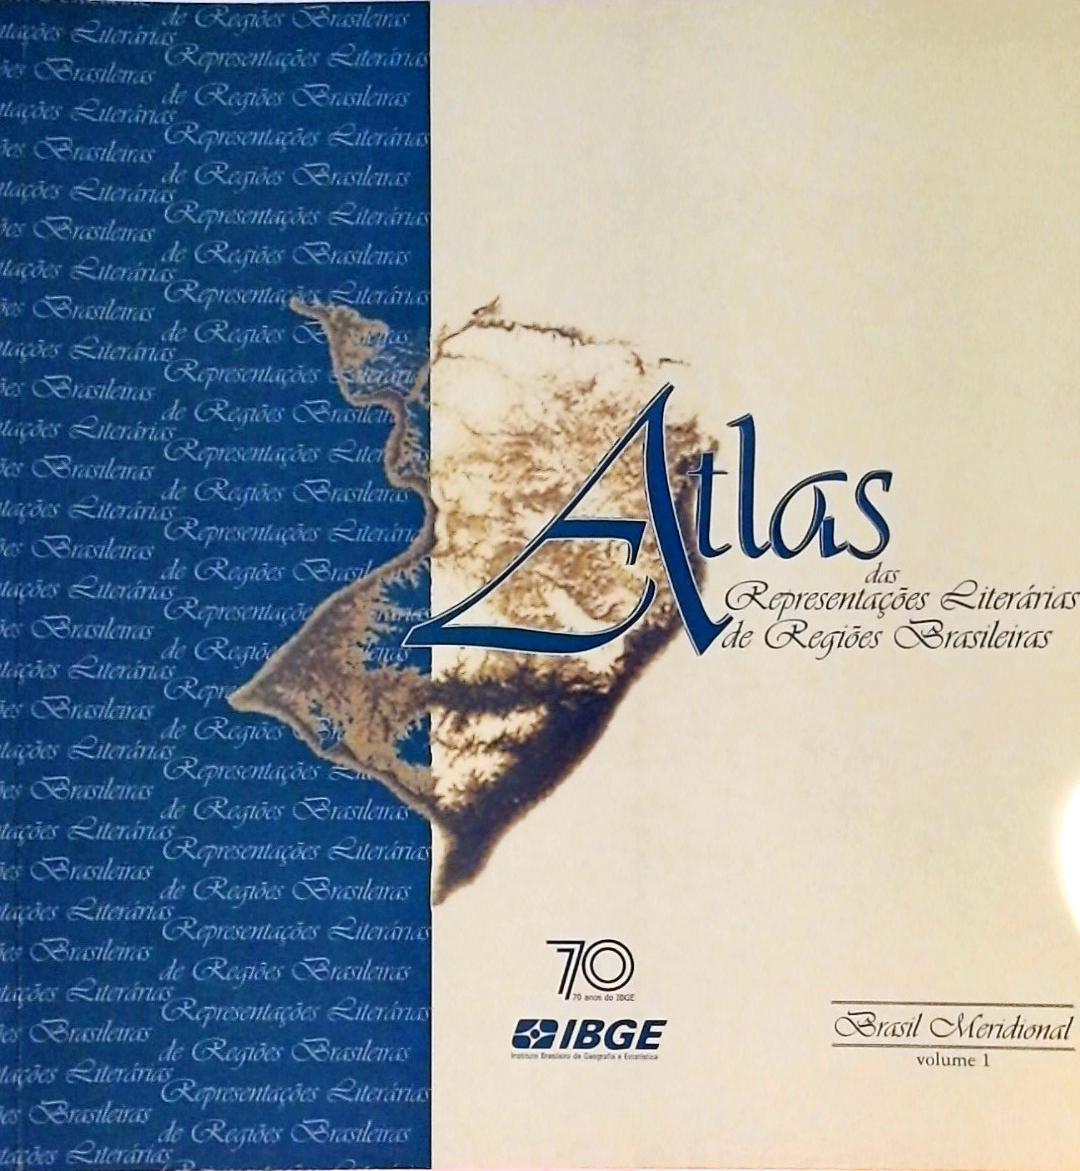 Atlas Das Representações Literárias De Regiões Brasileiras - Volume 1